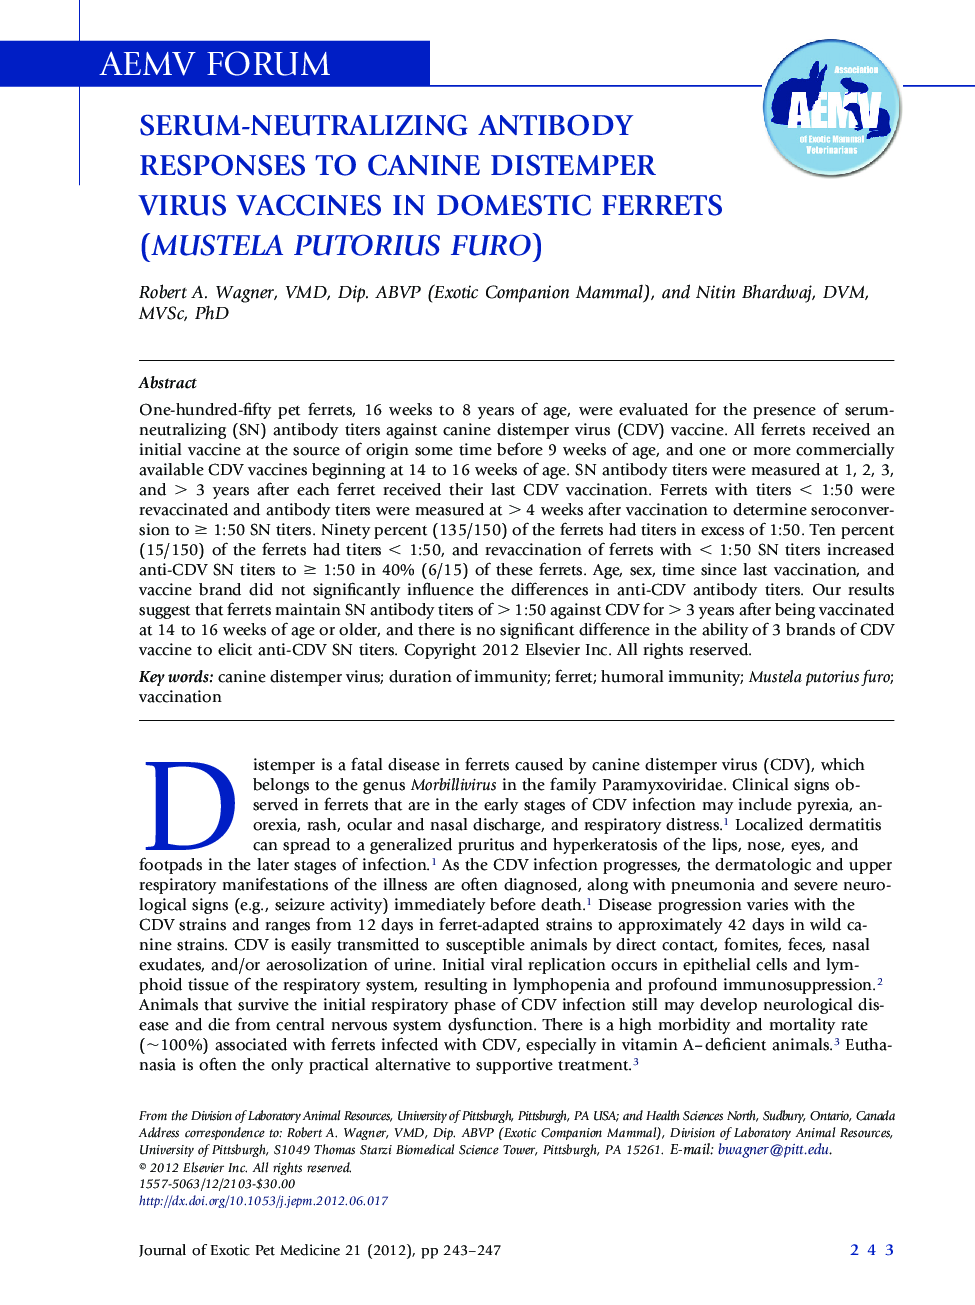 Serum-Neutralizing Antibody Responses to Canine Distemper Virus Vaccines in Domestic Ferrets (Mustela putorius furo)